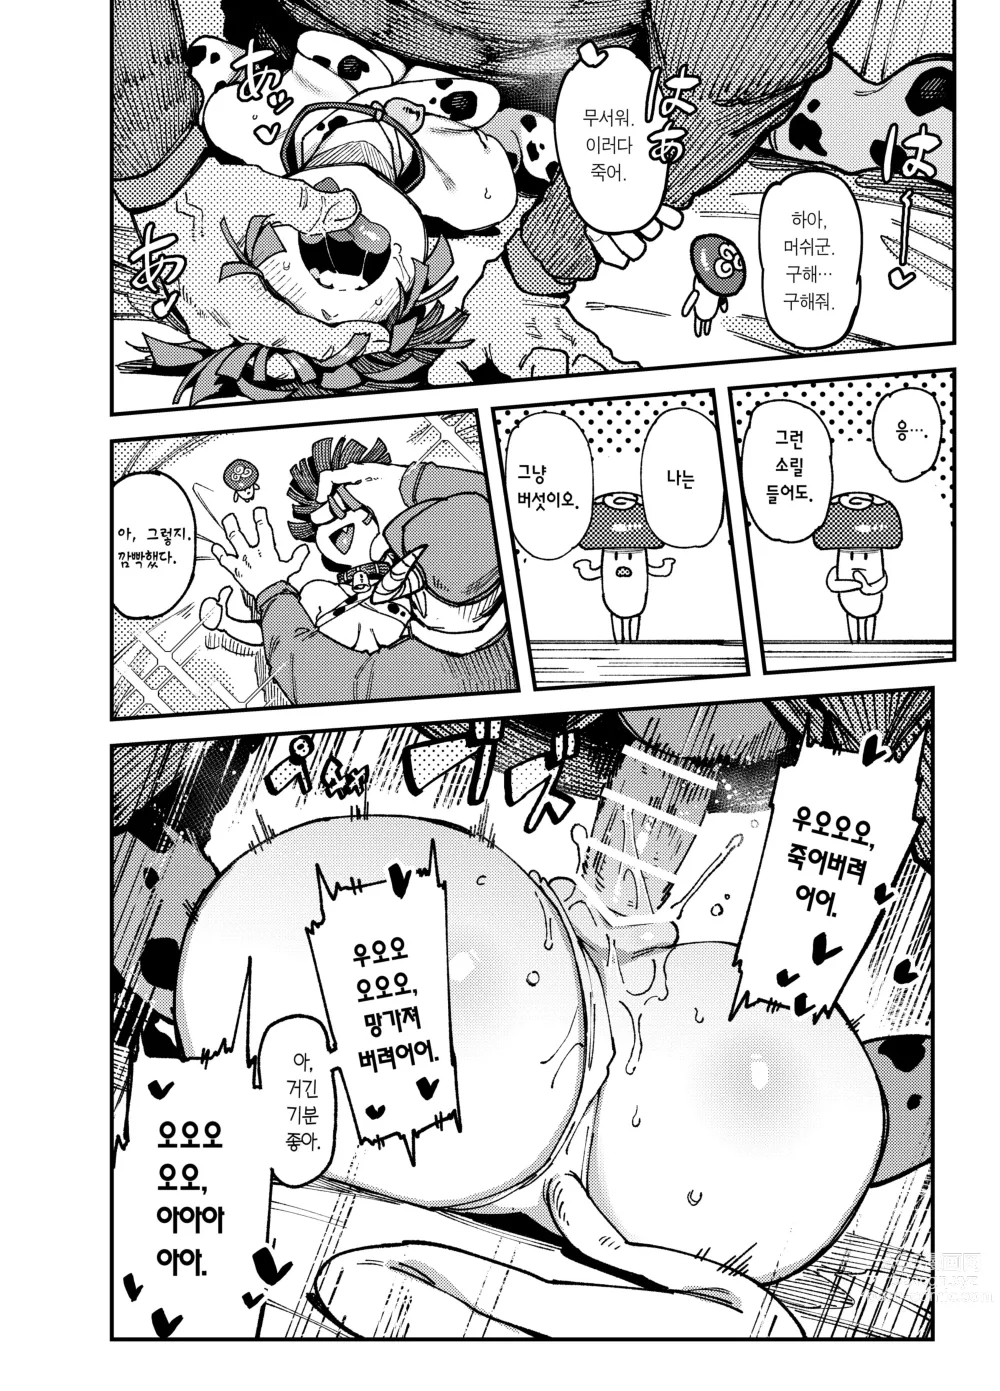 Page 26 of doujinshi 집이 너무 습해서 자란 환각을 유발하는 버섯을 잘못 먹고 발정이 나서 생긴 일들